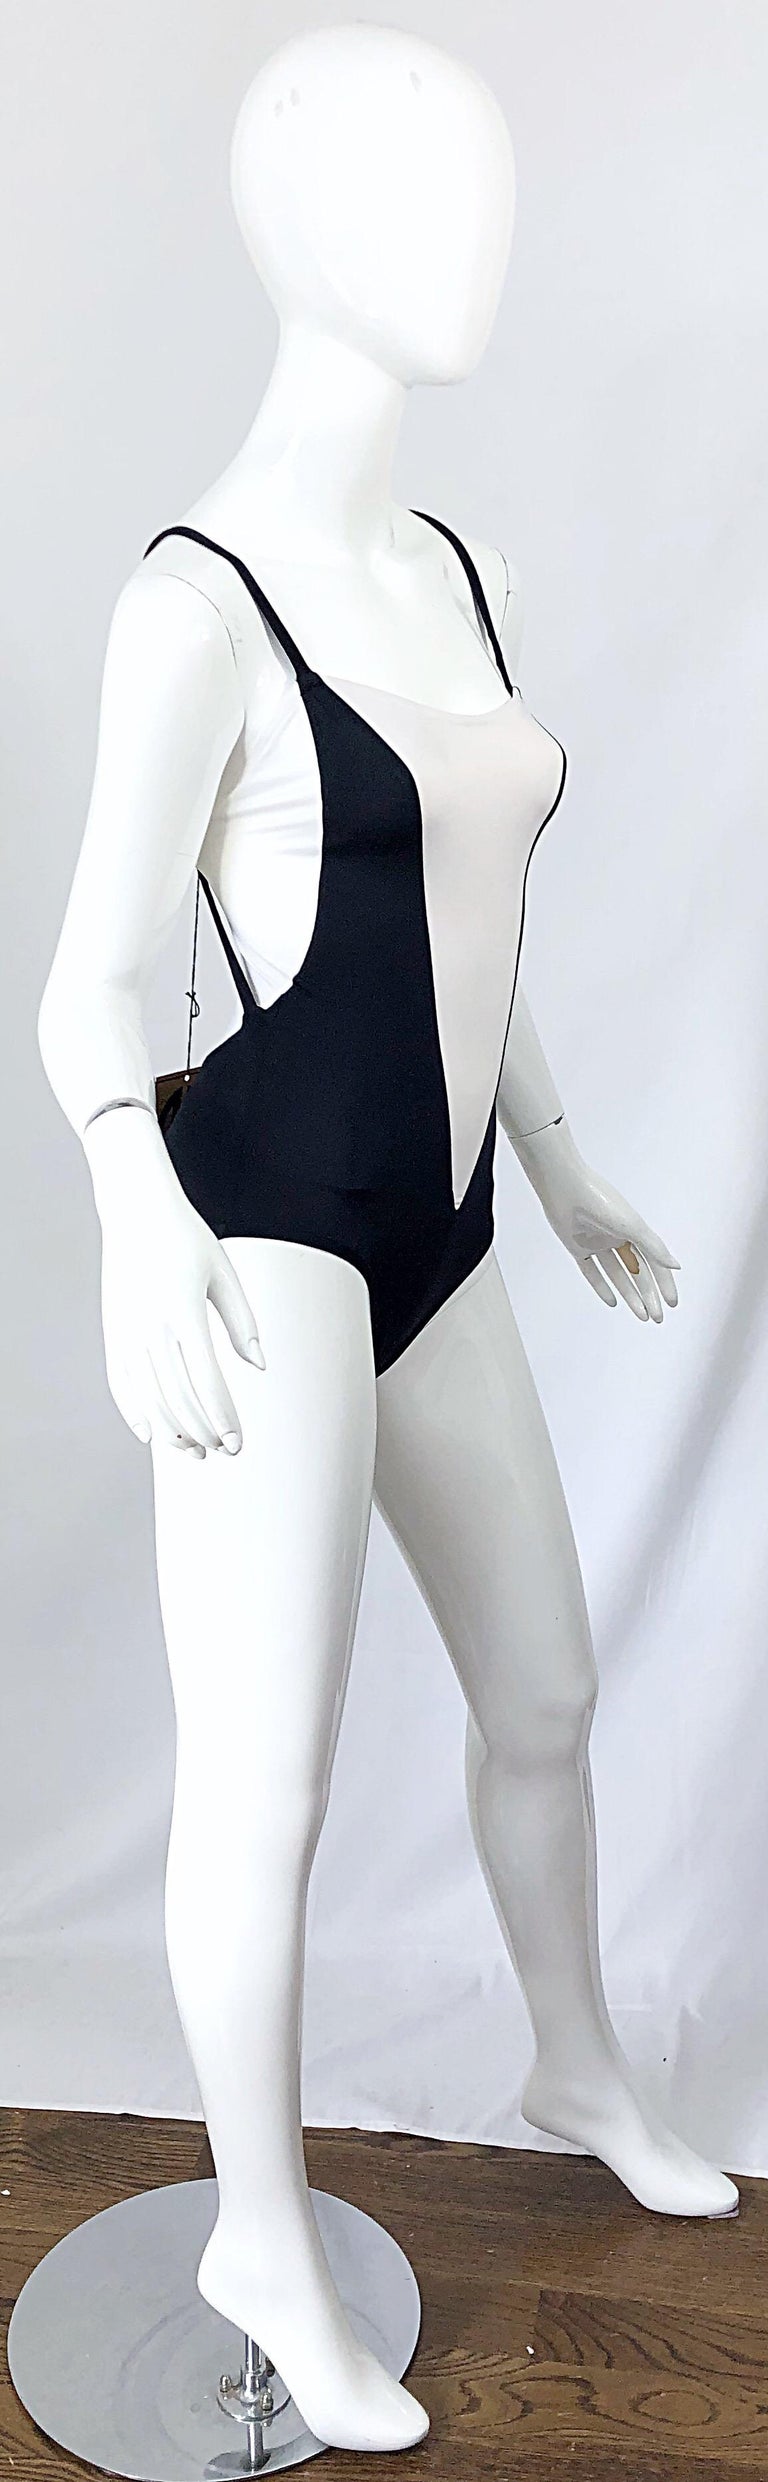 NWT Bill Blass 1980s Sz 8 Trompe l'oeil Black and White 80s Swimsuit ...